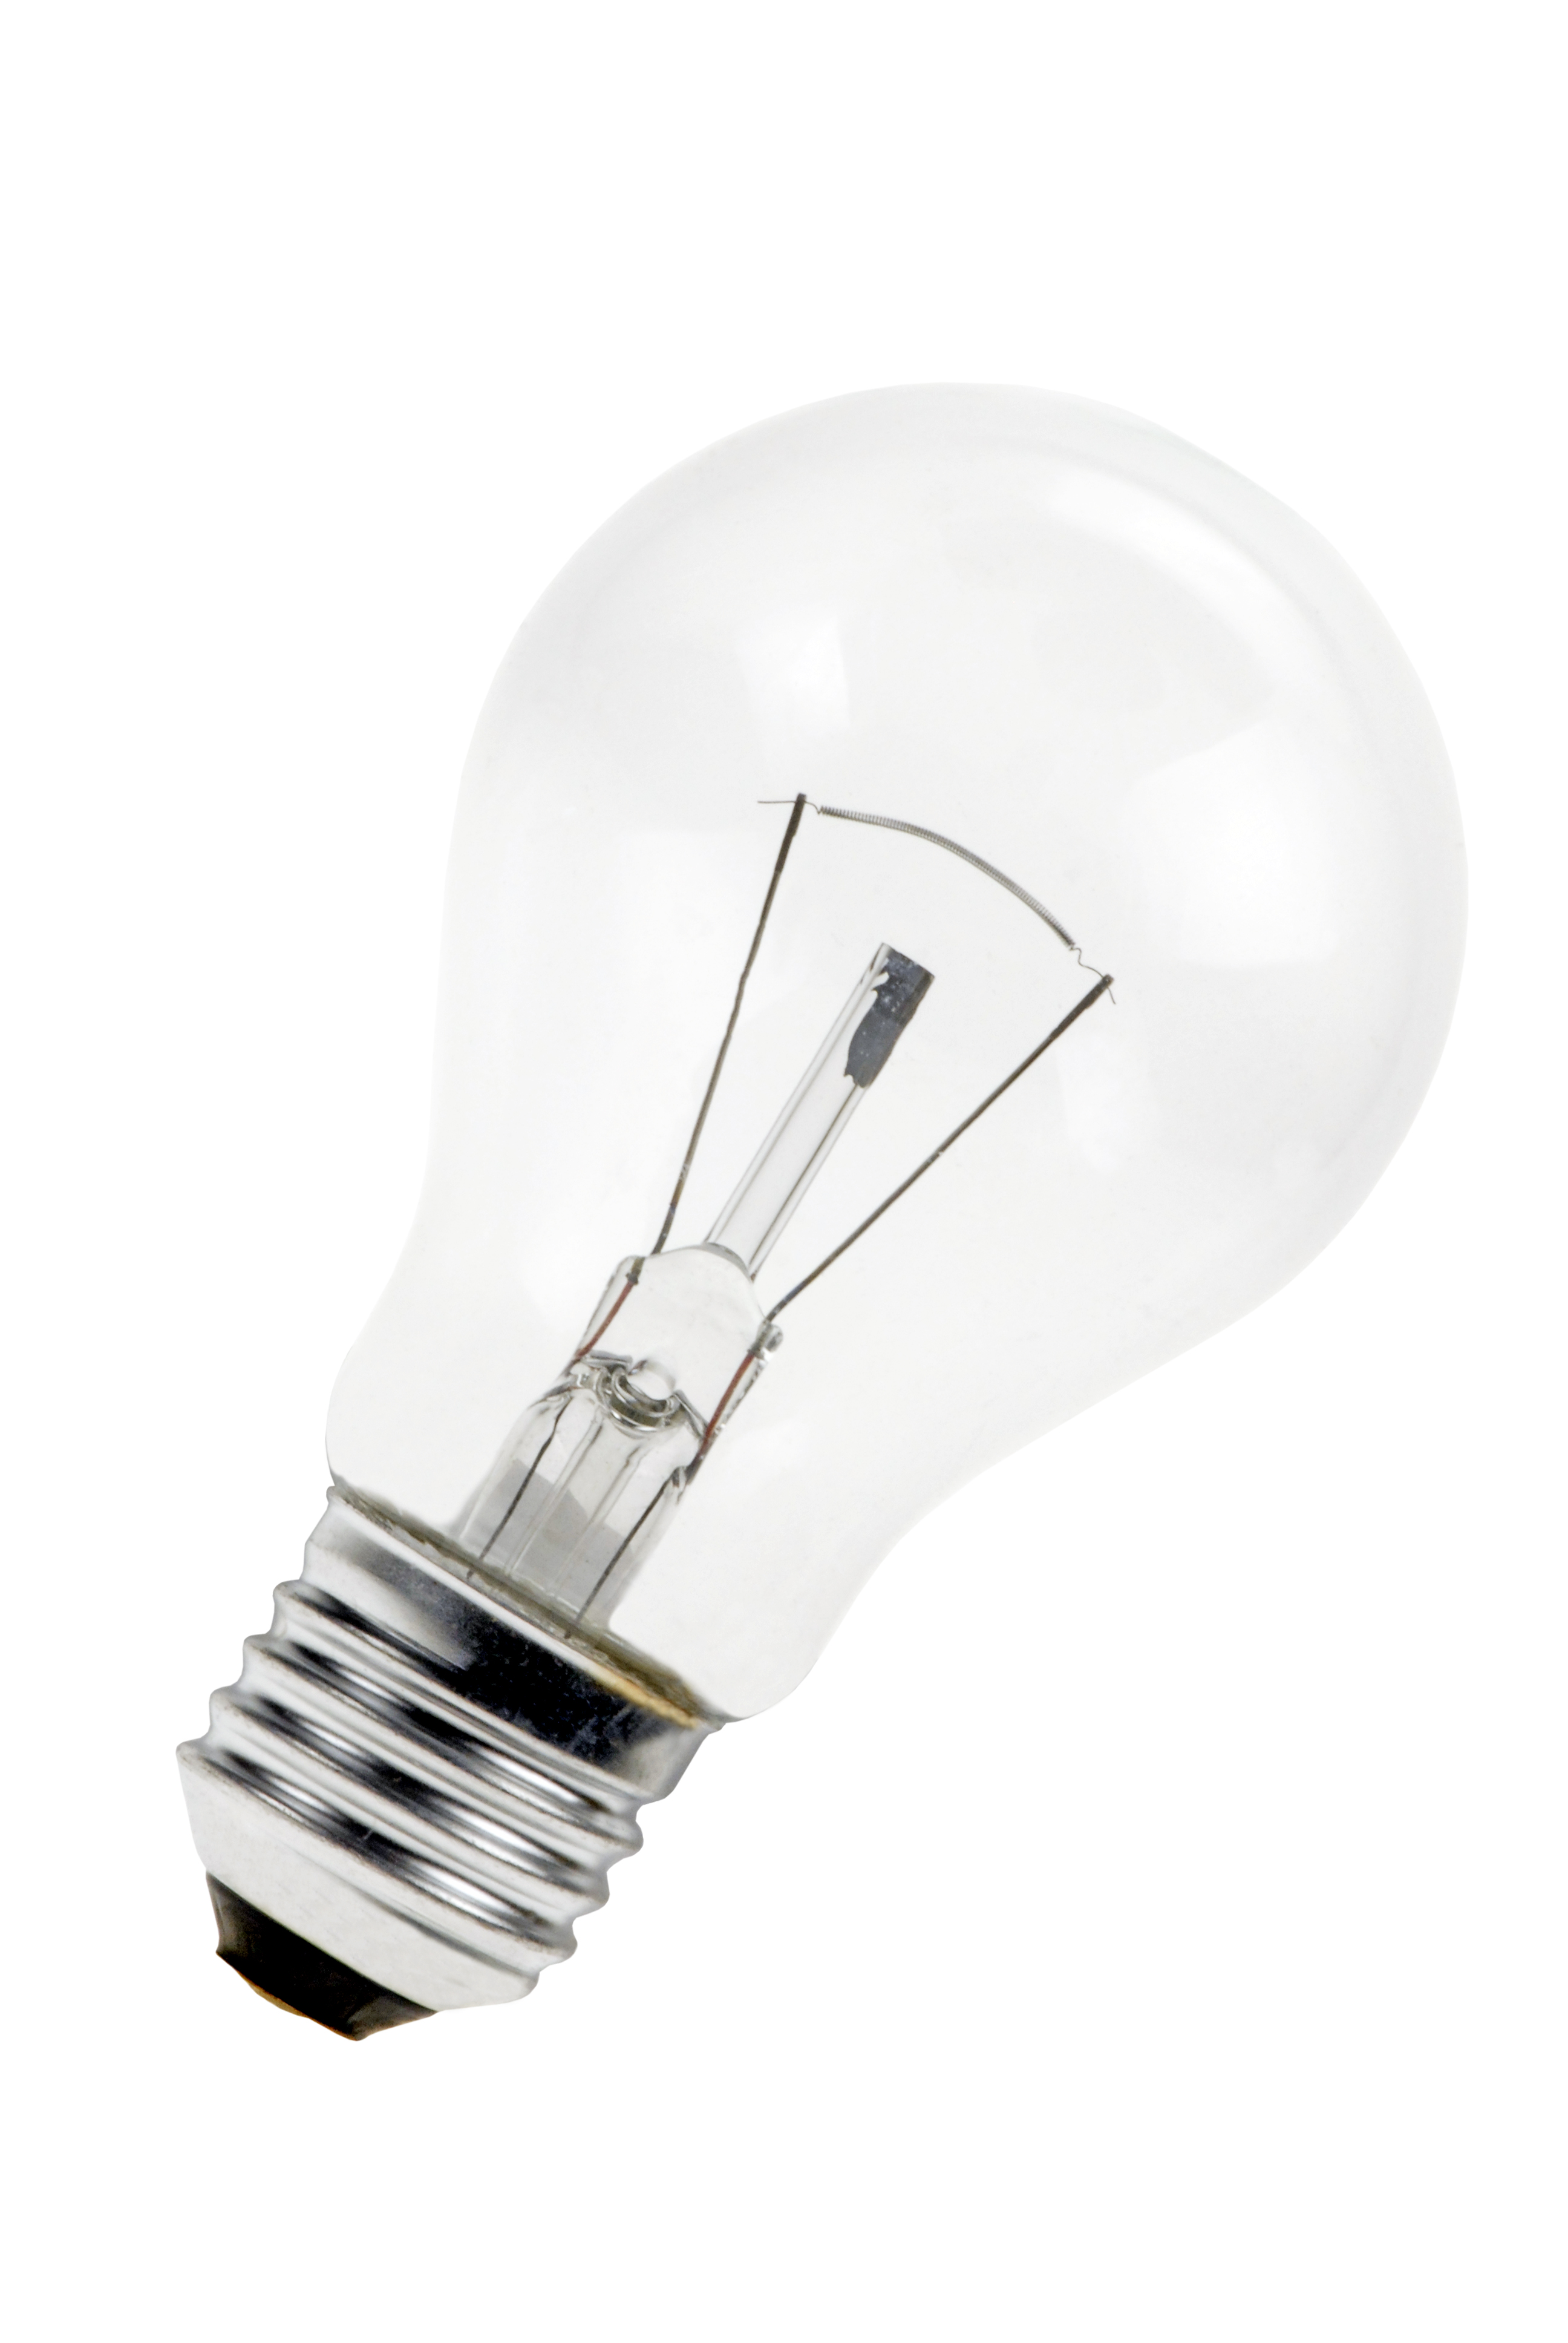 L'OUTIL PARFAIT - Ampoule halogène économique 330w - Ampoule halogène 330w  à économie d'énergie Classe C 330w - Livraison gratuite dès 120€